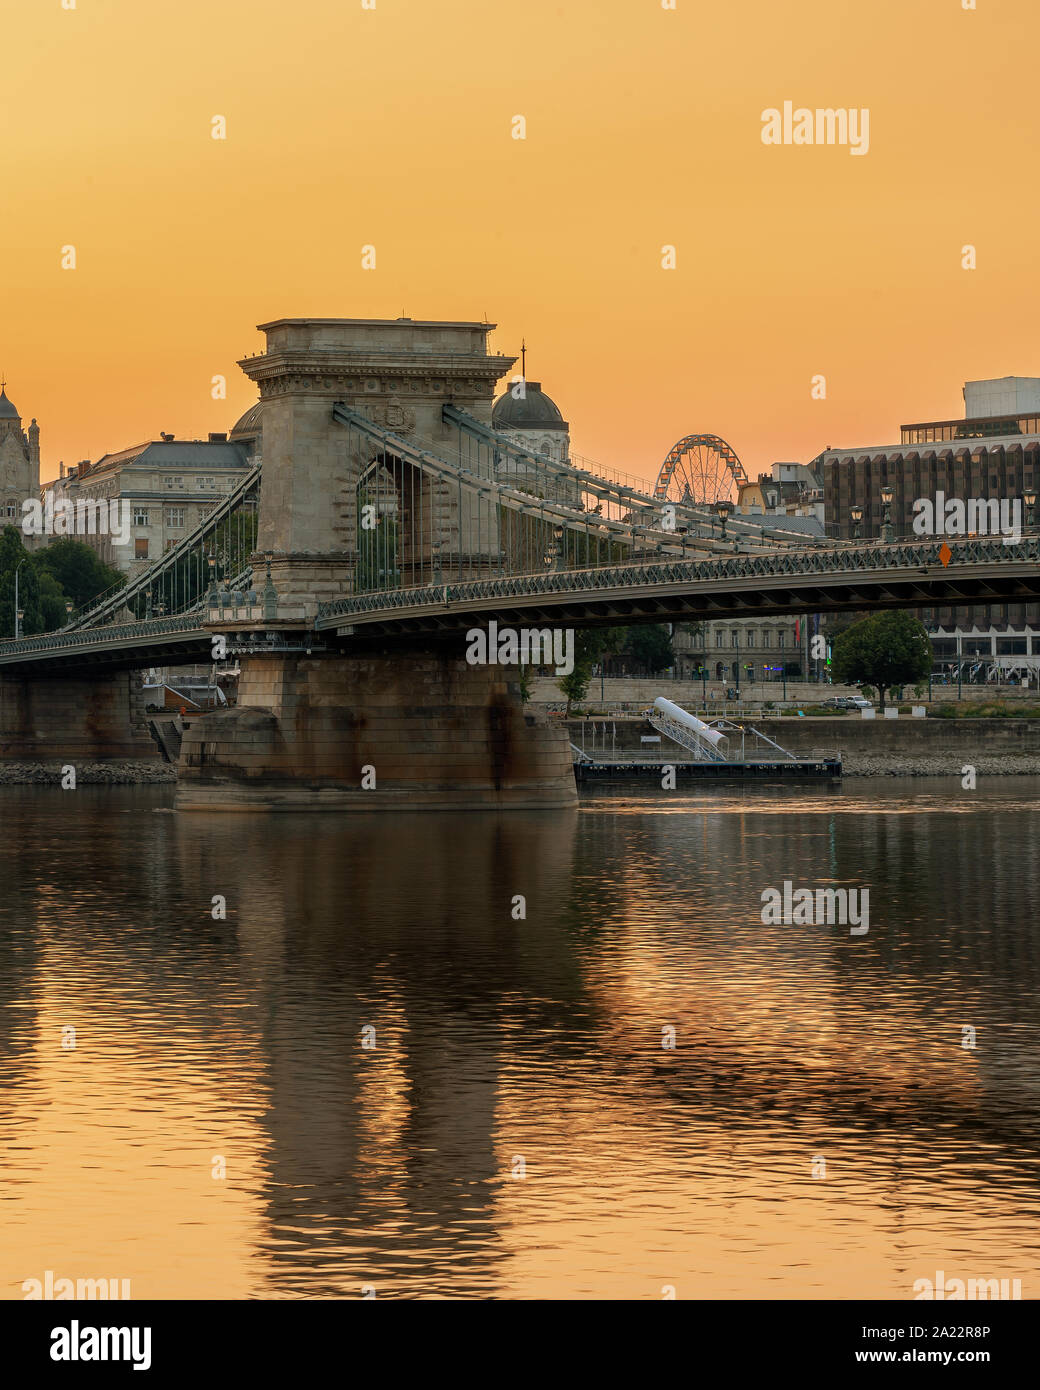 Kettenbrücke in Budapest, Ungarn. Donau mit Booten. Am Abend wird der Verkehr mit leichten Wanderwegen. Antenne Stadtbild. Stockfoto